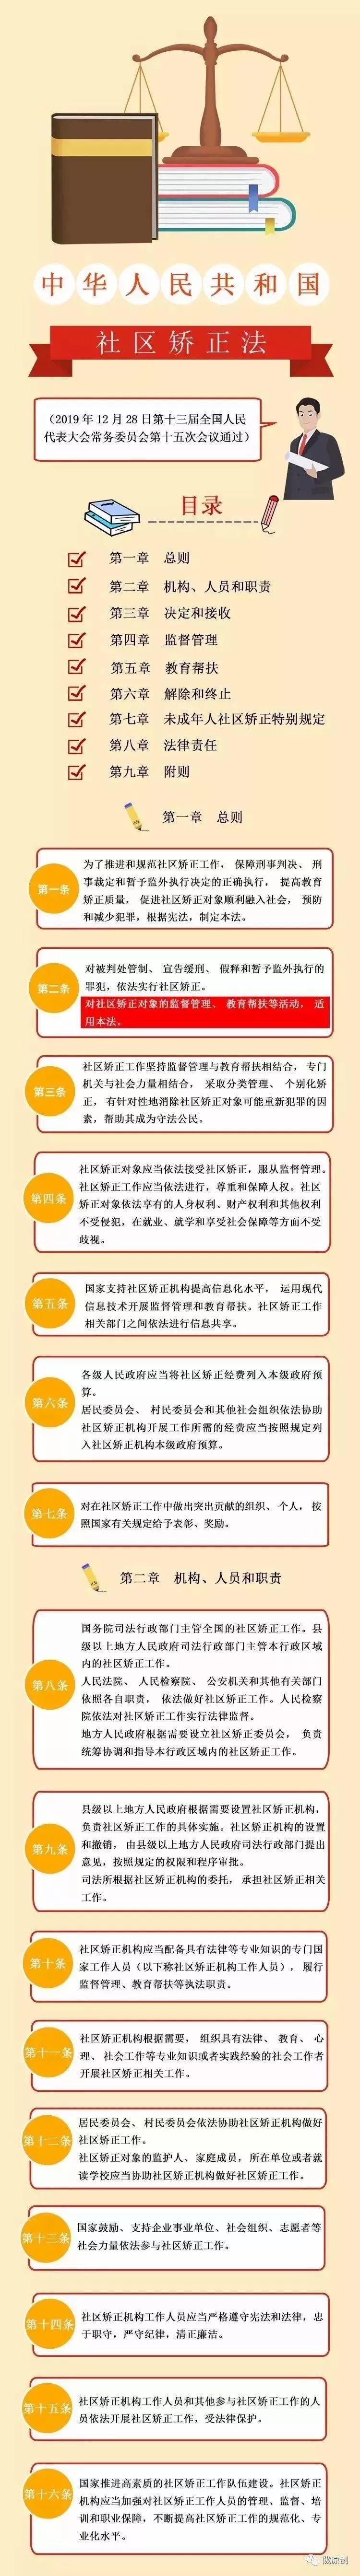 一图看懂《中华人民共和国社区矫正法》全文!